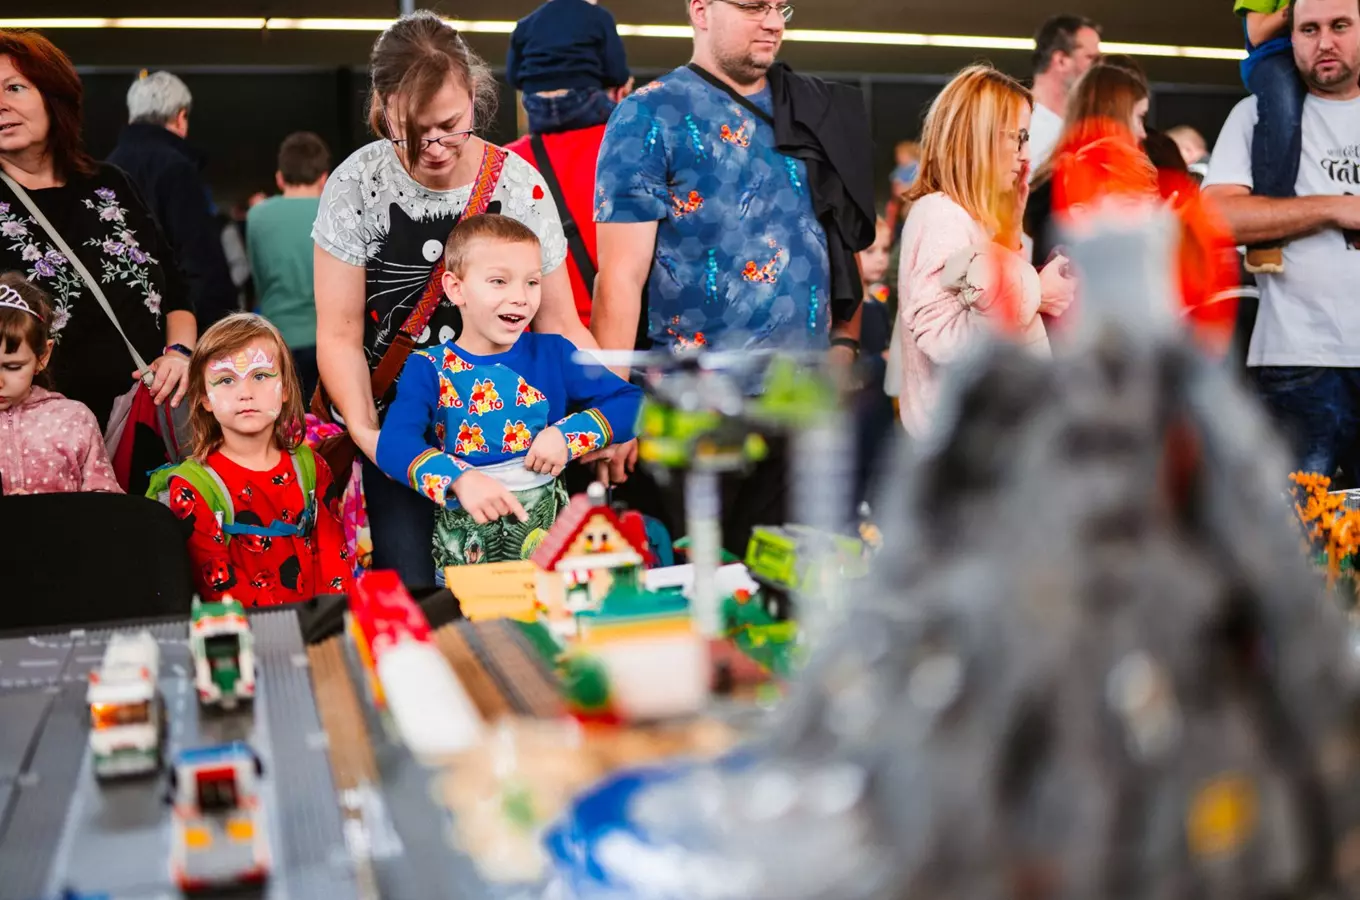 Tipy, kam s dětmi na výstavy Lego modelů